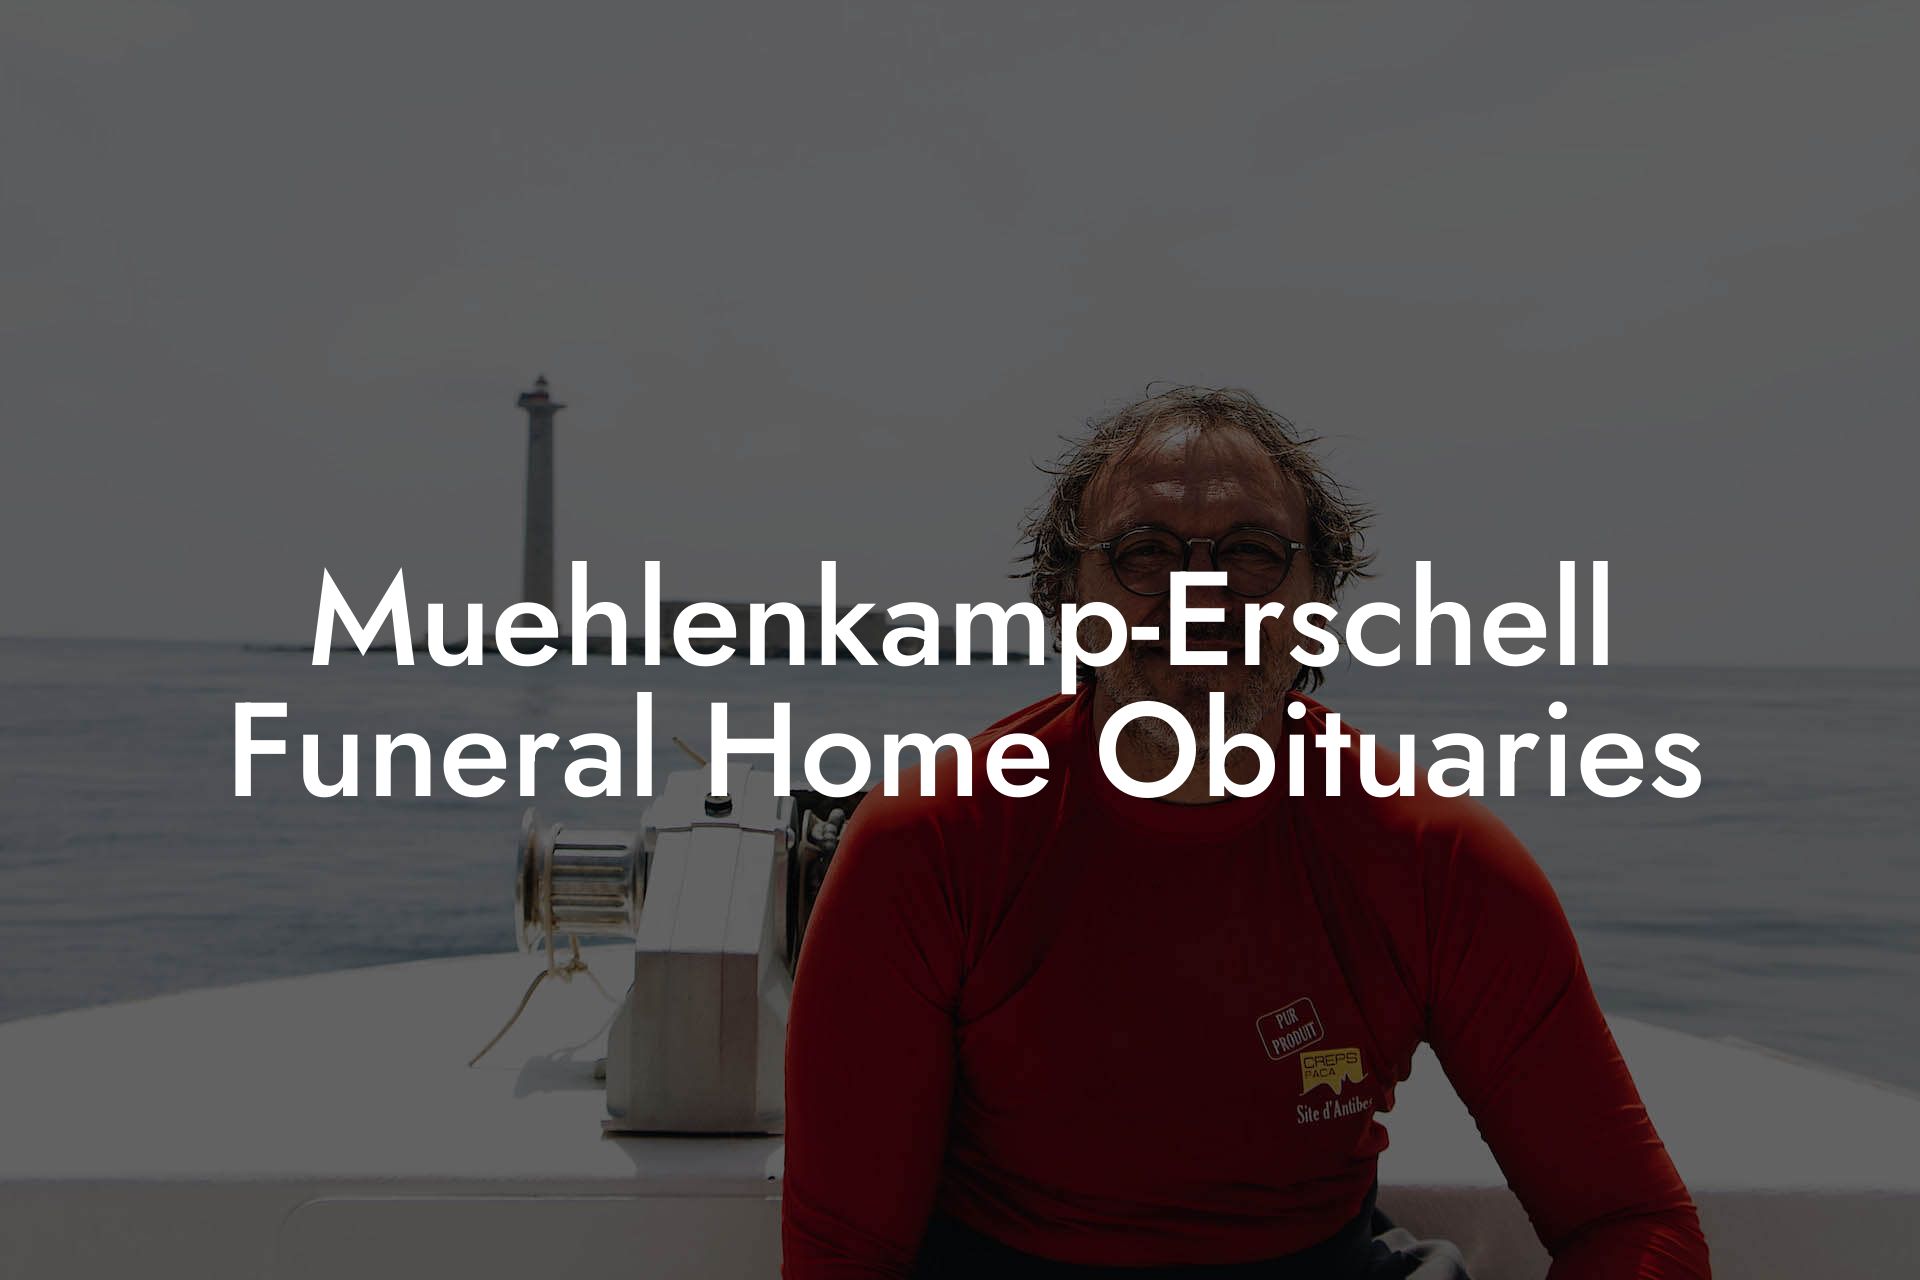 Muehlenkamp-Erschell Funeral Home Obituaries